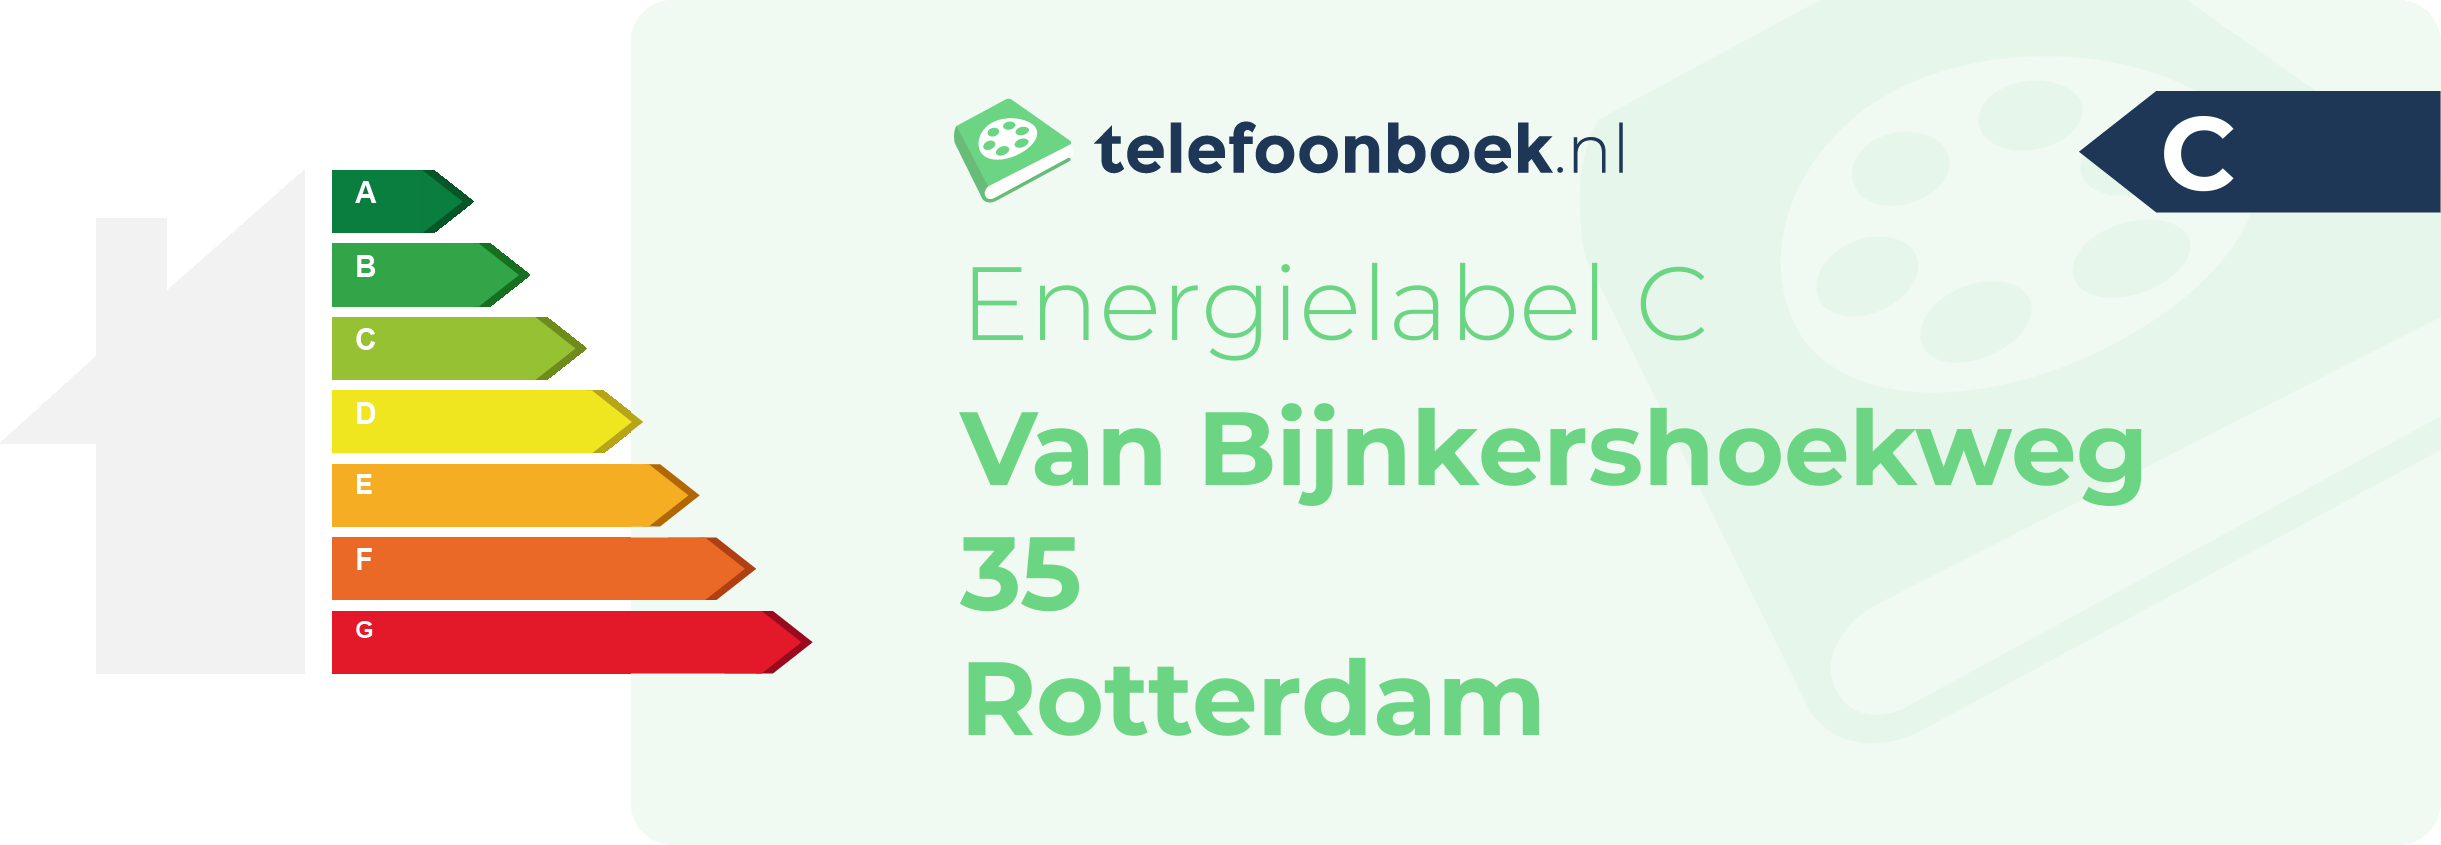 Energielabel Van Bijnkershoekweg 35 Rotterdam